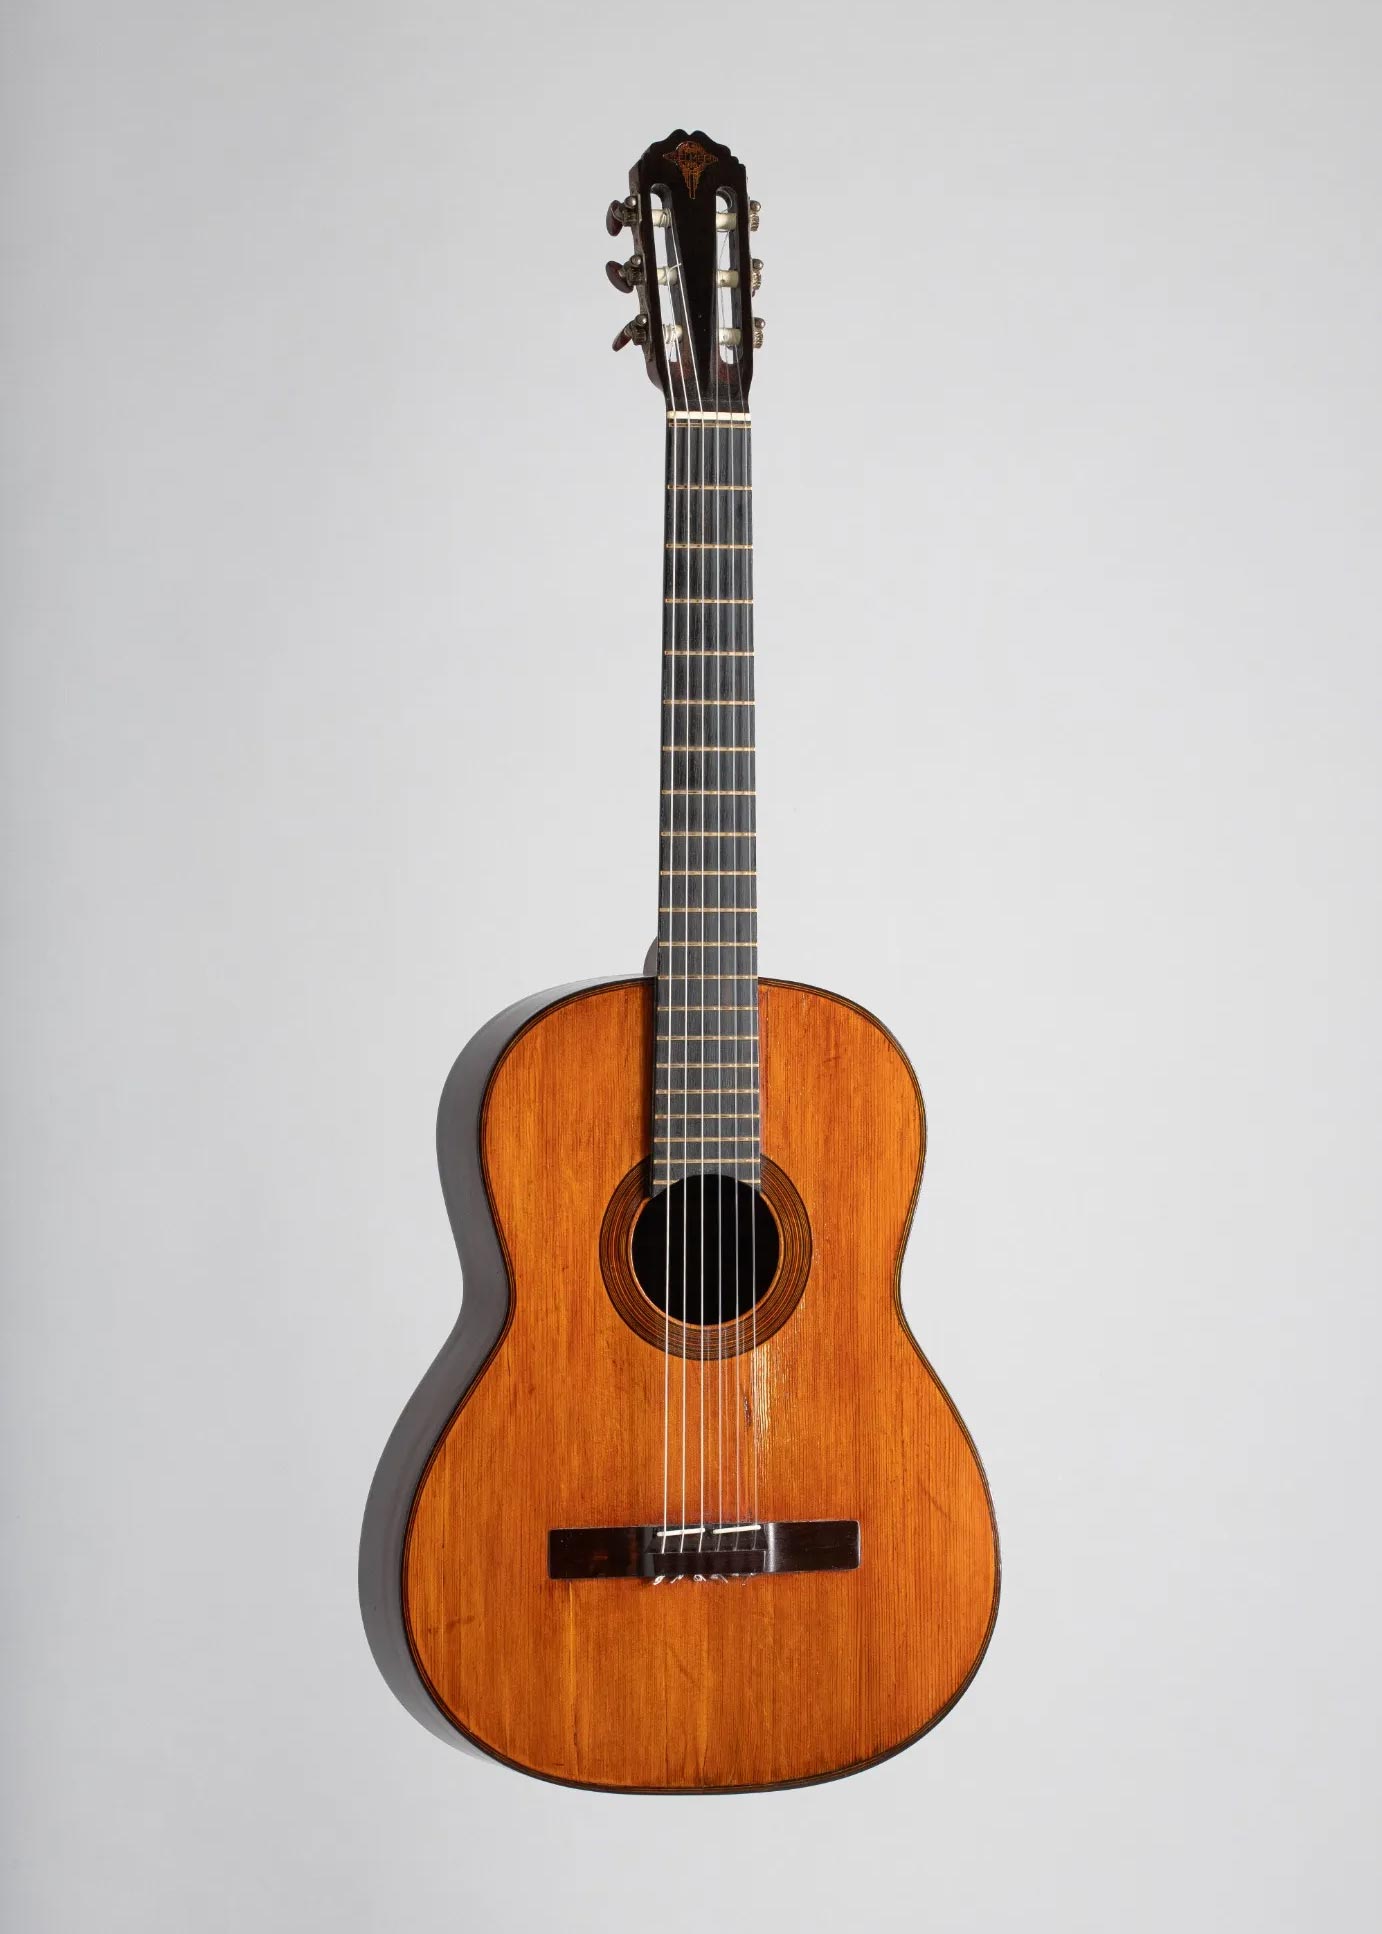 Guitare de marque SELMER, modèle Classique faite en 1942. Instrument mis en vente par Vichy Enchères le 5 novembre 2022 © C. Darbelet